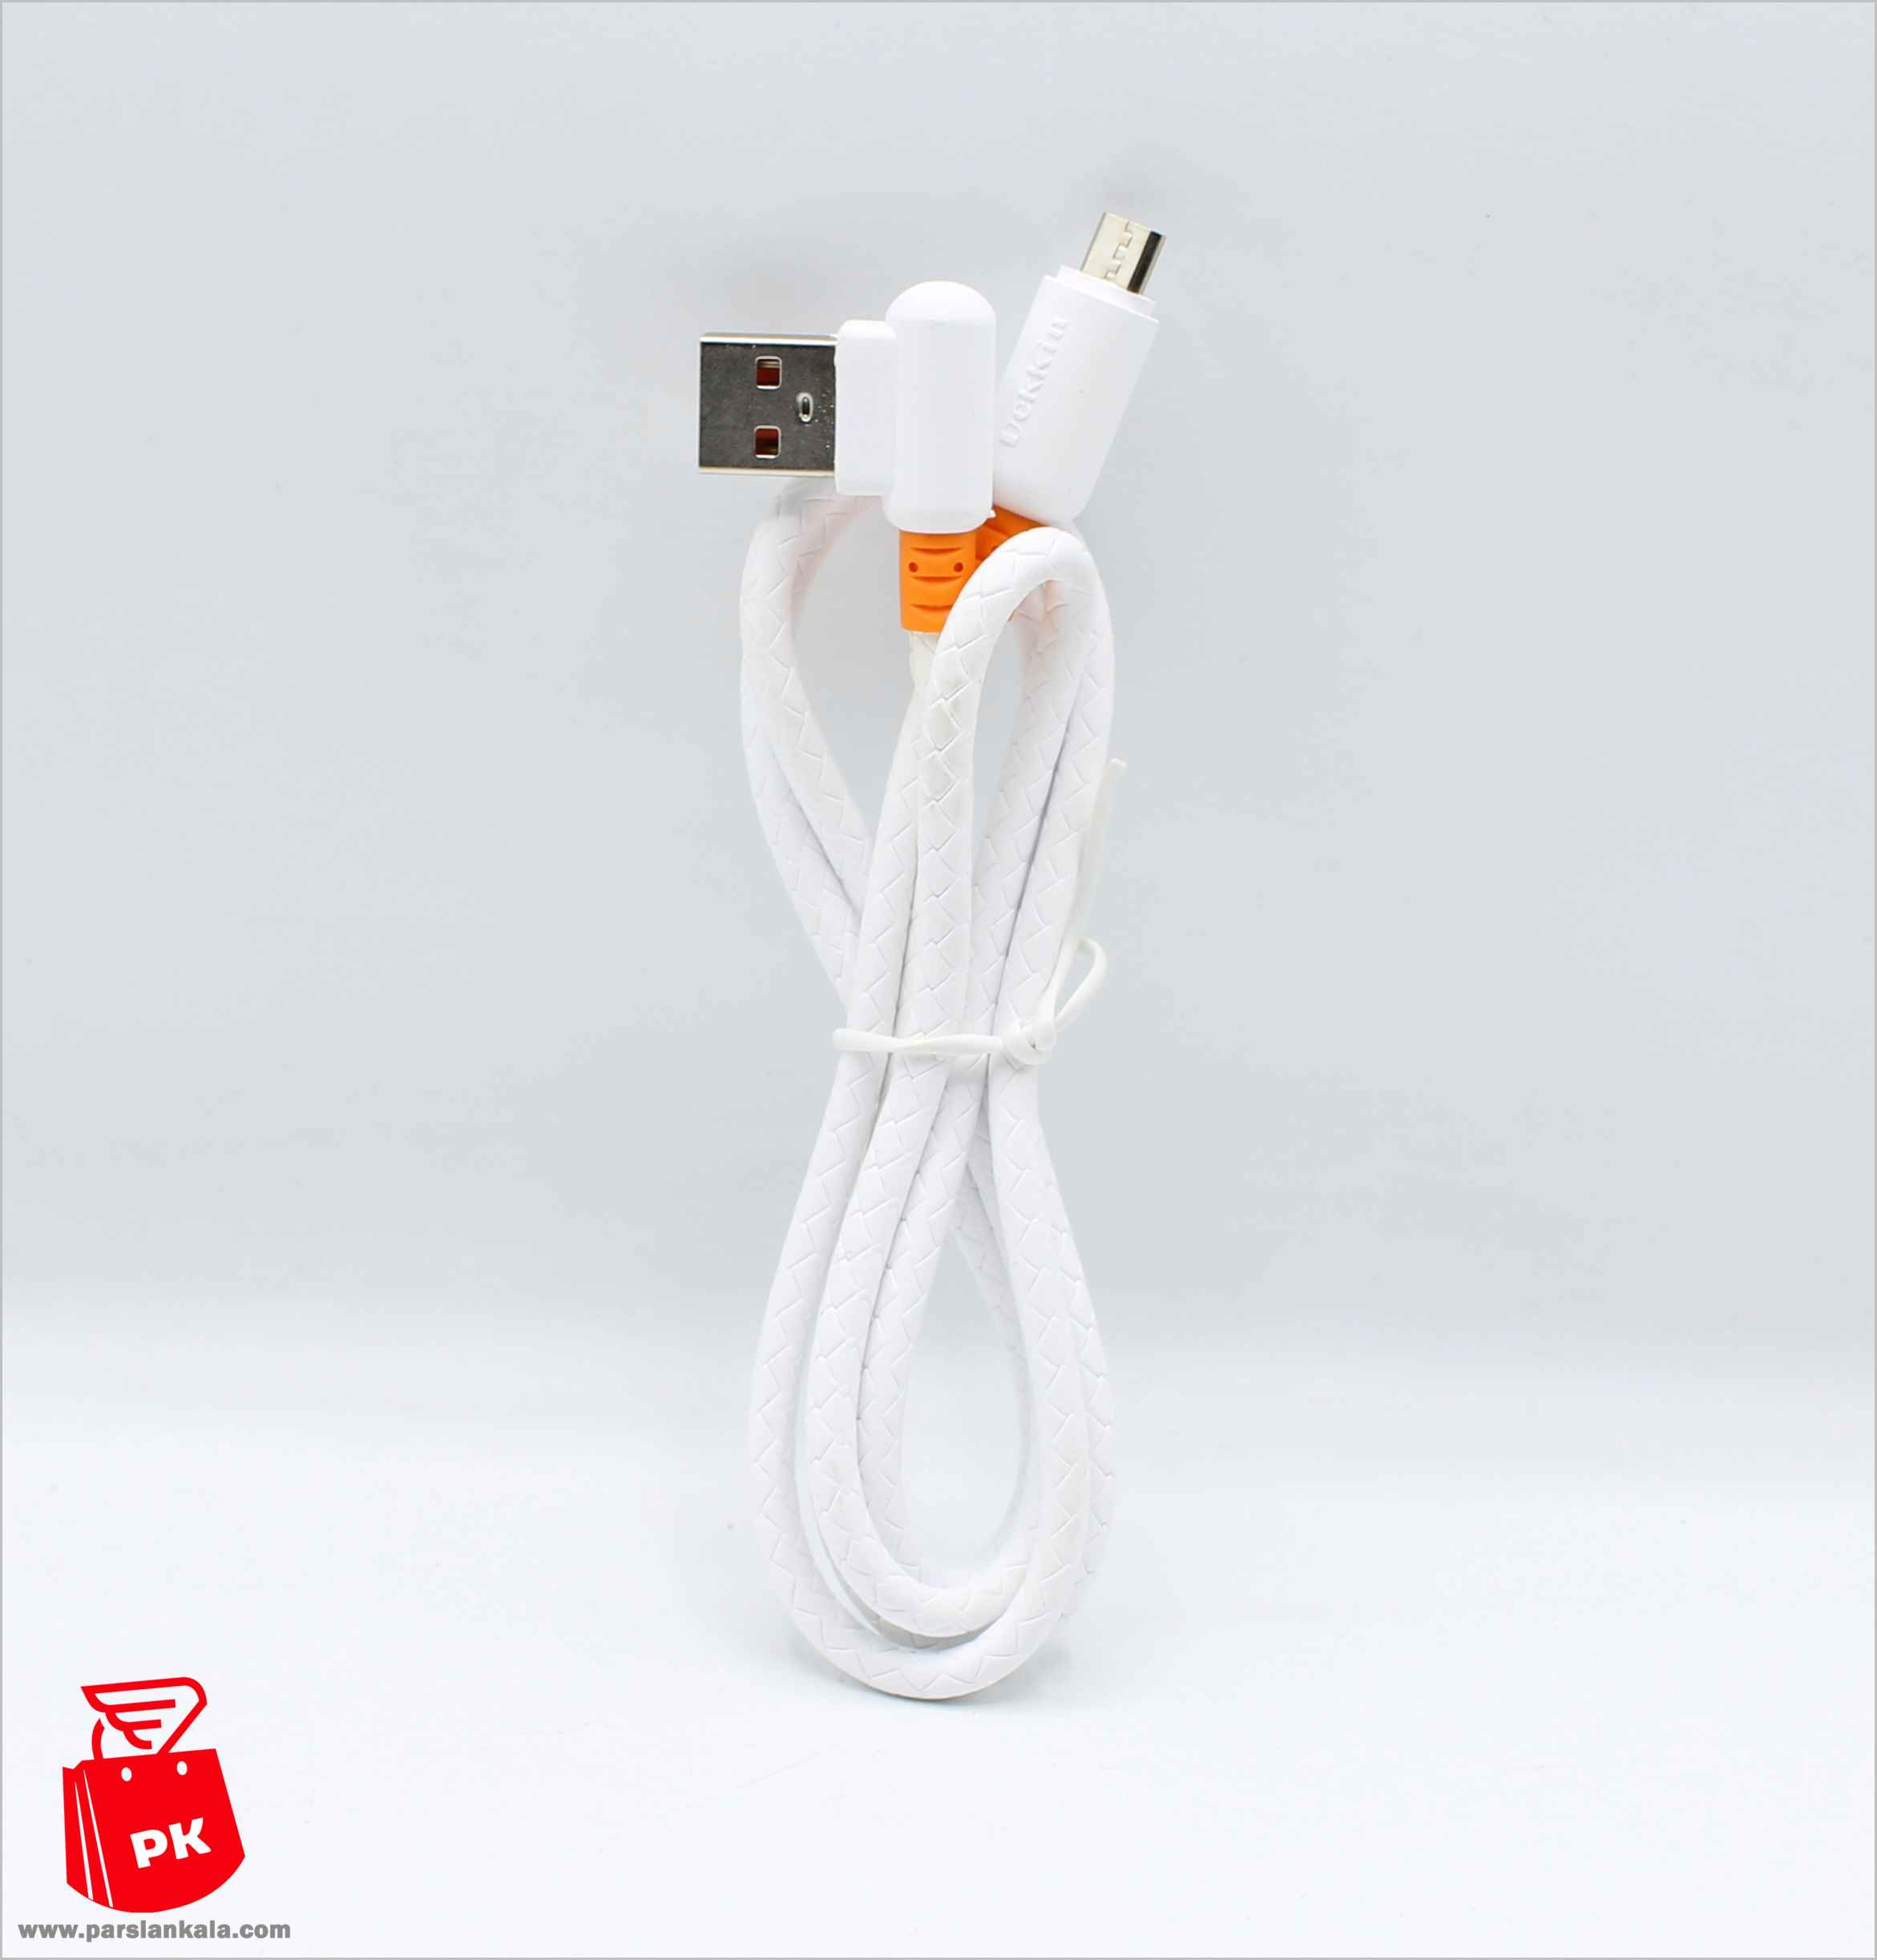 USB Cable DK A42 DEKKIN Quick%20(4) %D9%BE%D8%A7%D8%B1%D8%B3%DB%8C%D8%A7%D9%86 %DA%A9%D8%A7%D9%84%D8%A7